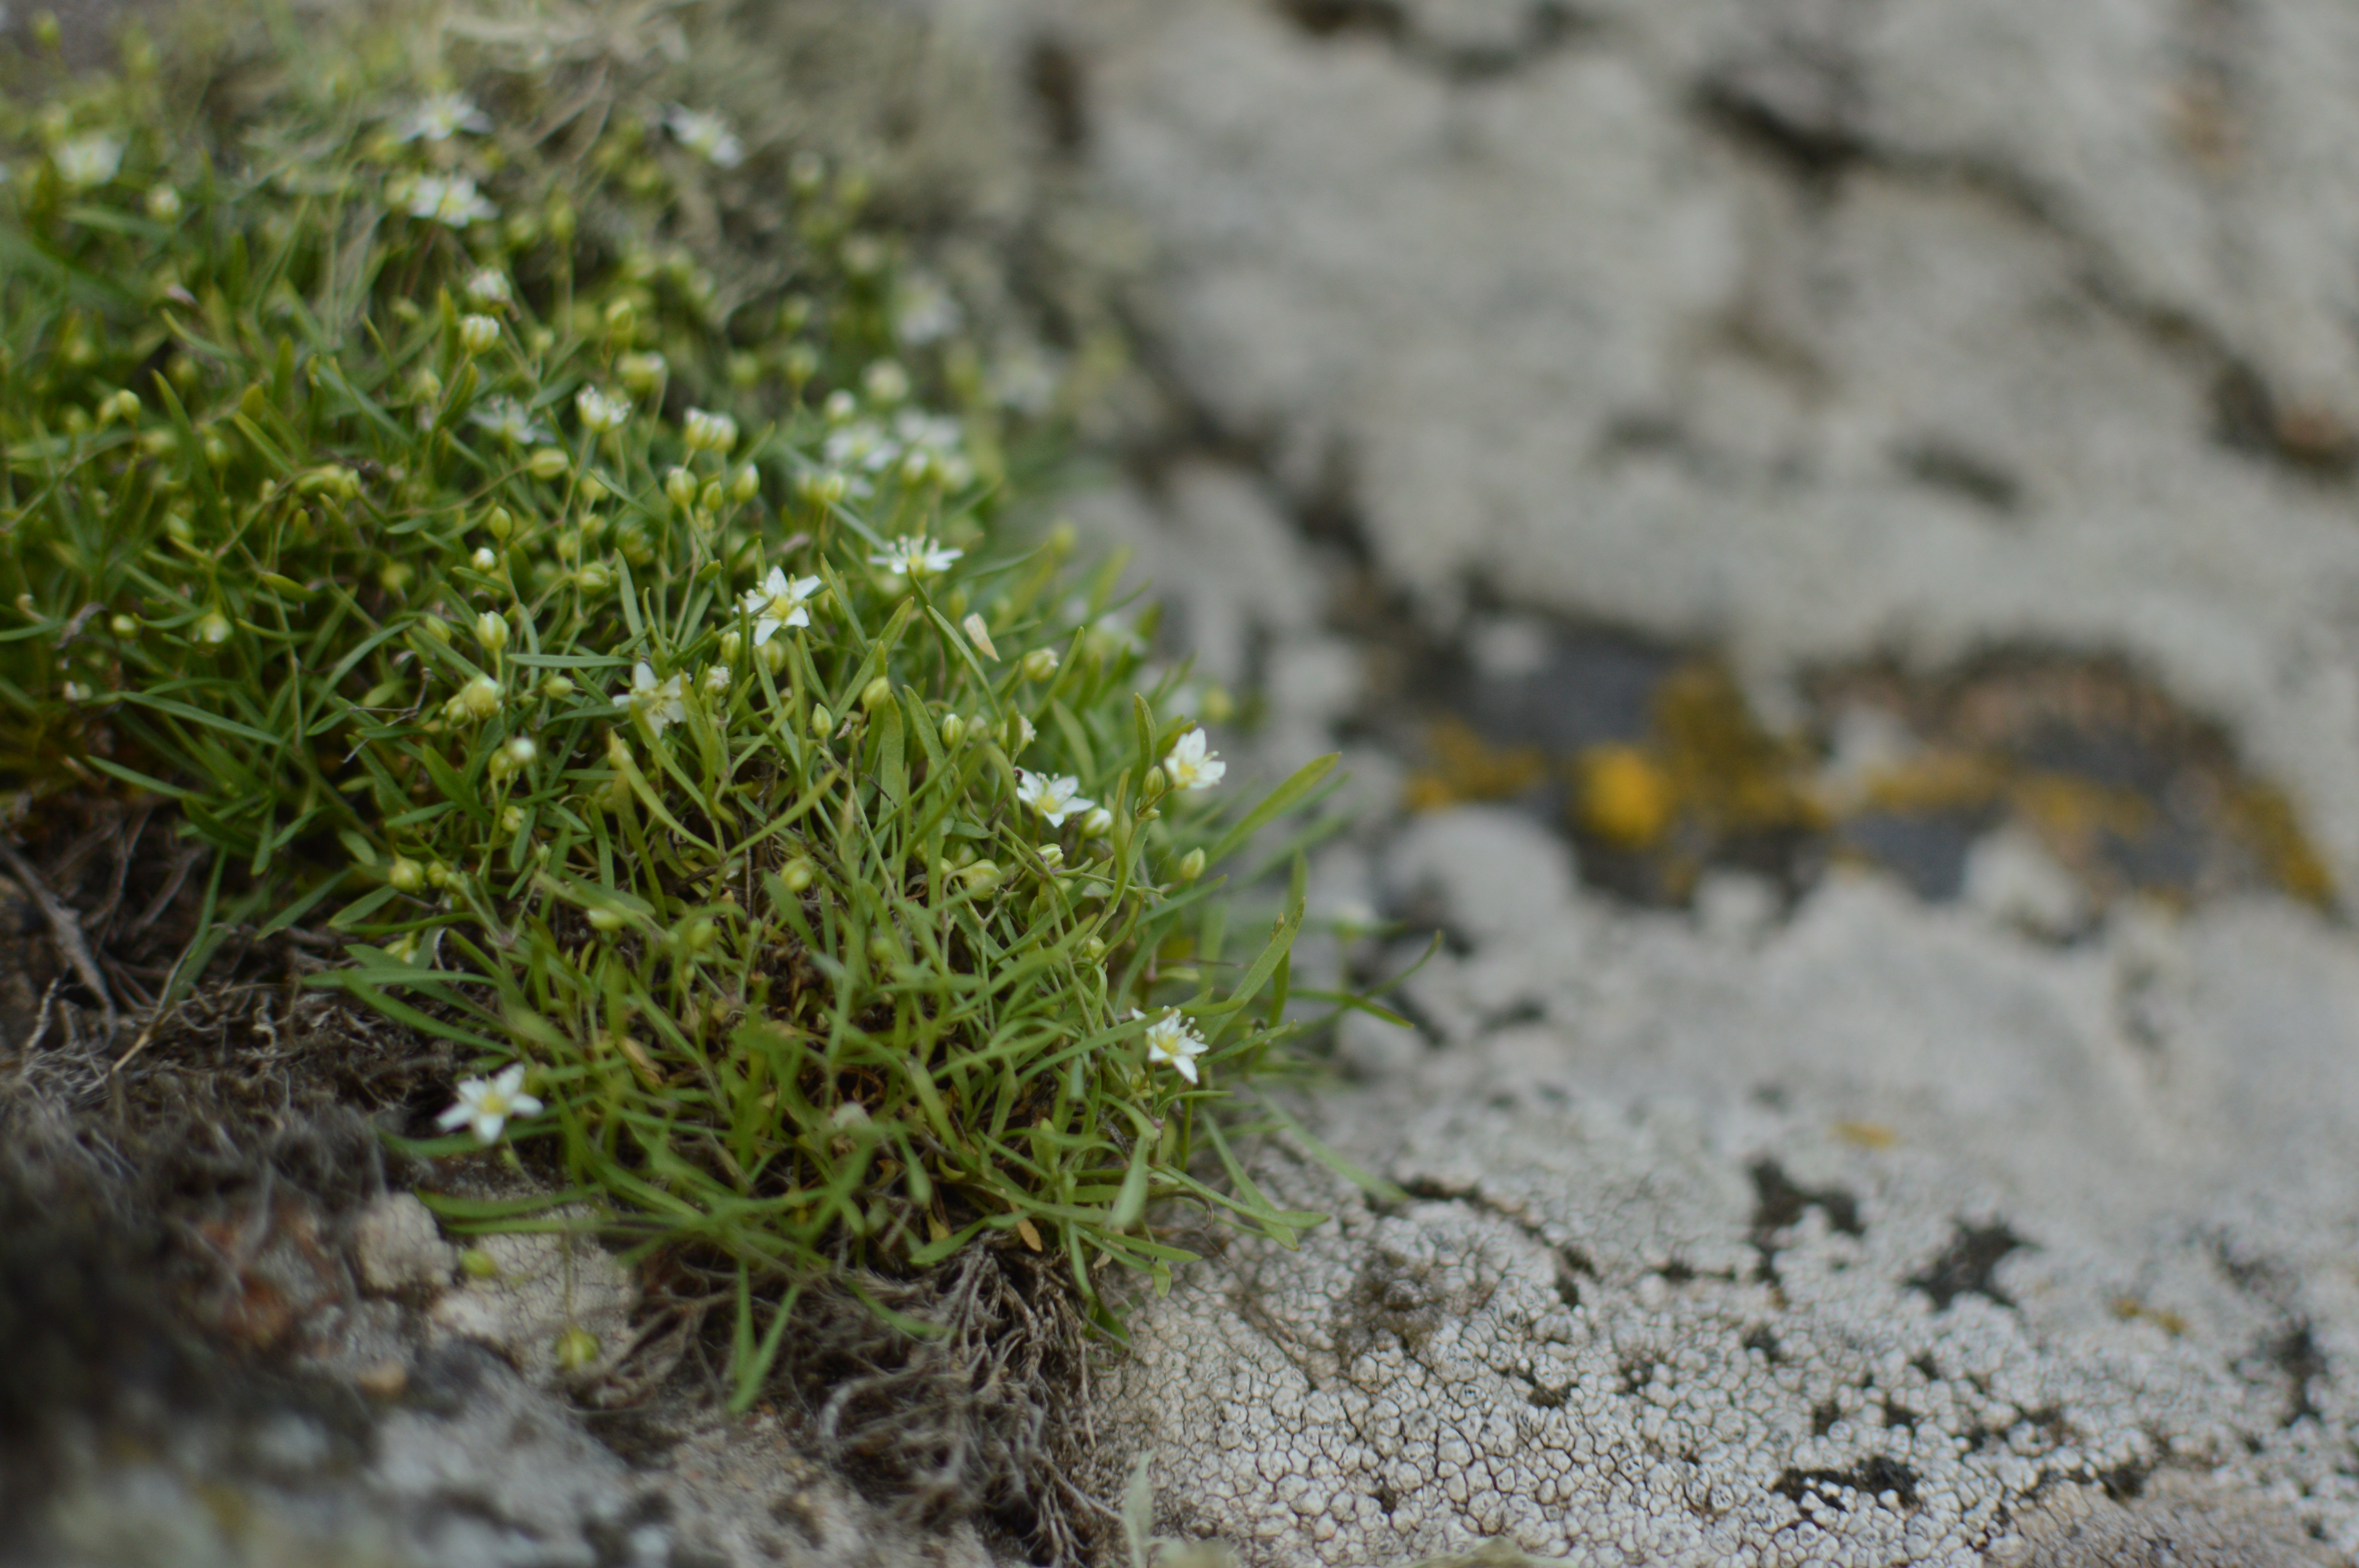 Мерингія бузька (Moehringia hypanica) – ендемічний вид рослин, поширений тільки на прямовисних гранітних скелях у Бузькому Гарді, фото Дар'я Ширяєва